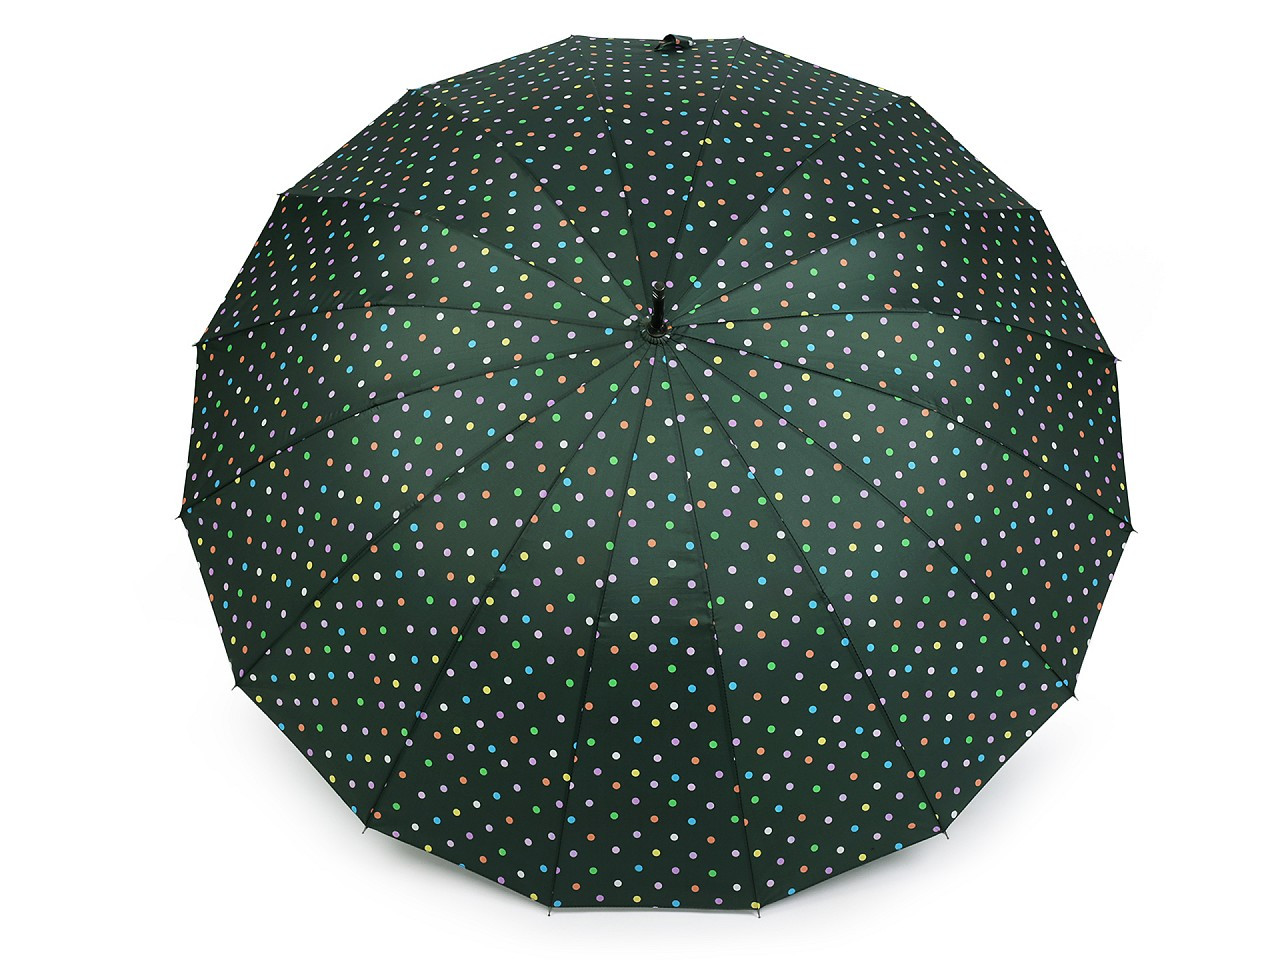 Velký rodinný deštník s puntíky, barva 3 zelená tm.